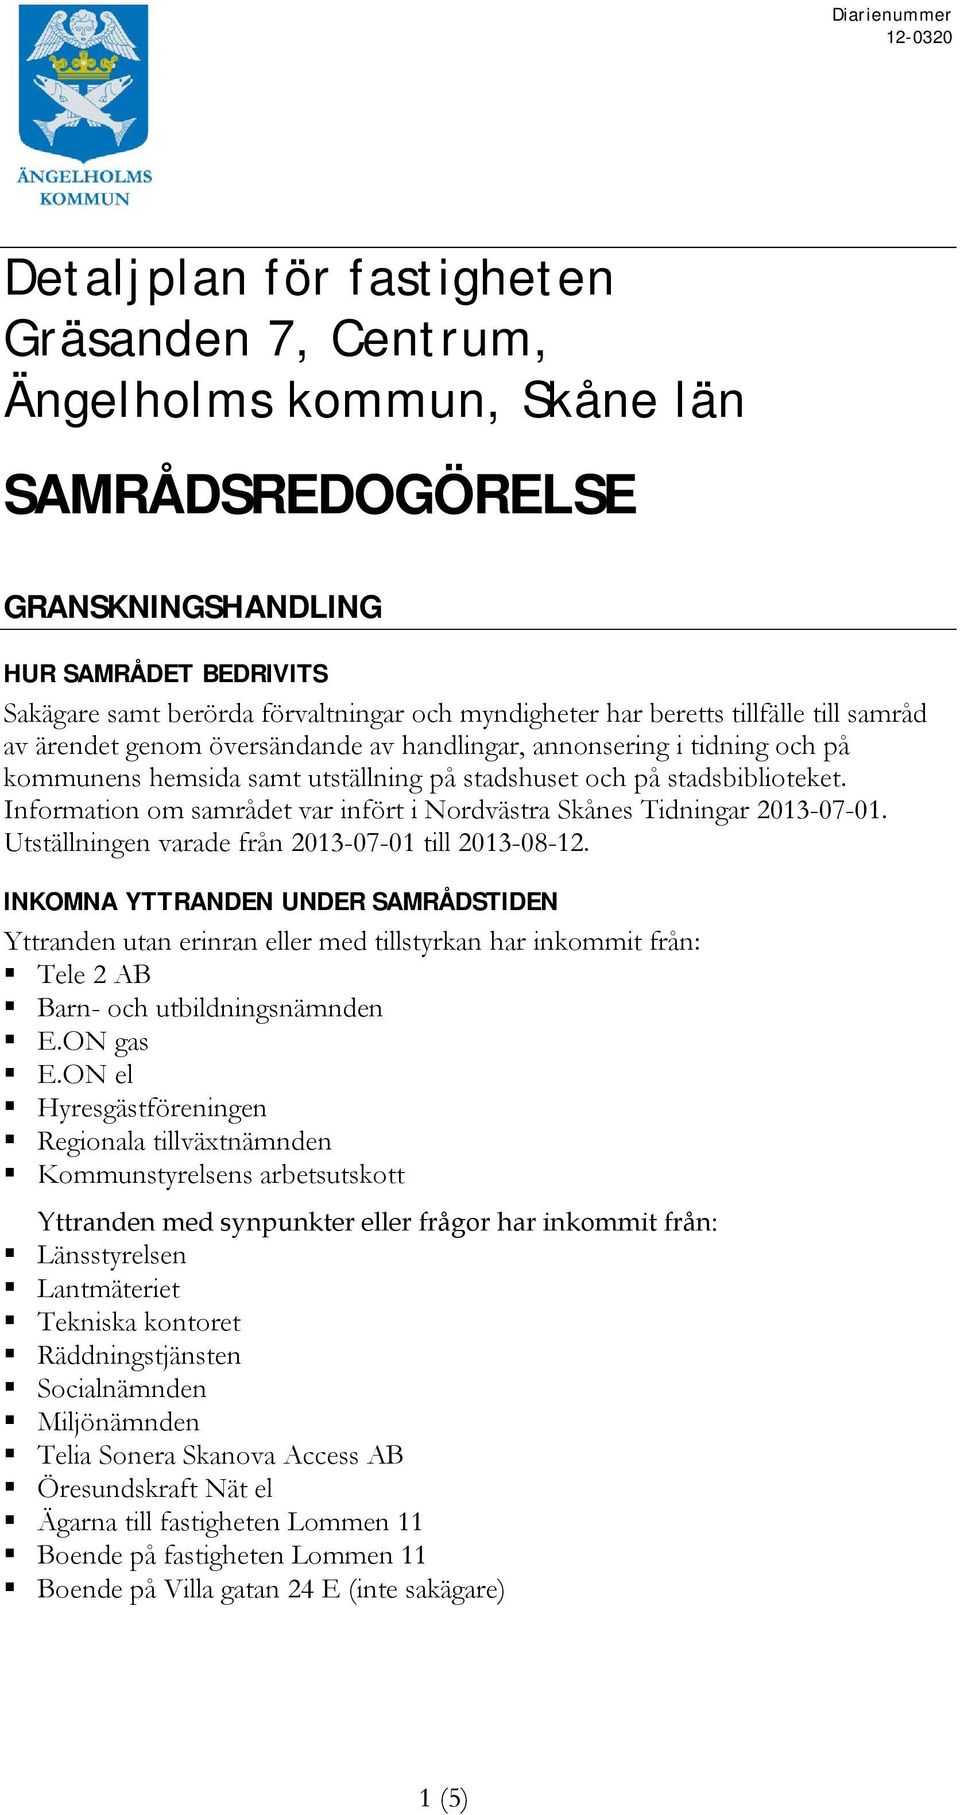 Information om samrådet var infört i Nordvästra Skånes Tidningar 2013-07-01. Utställningen varade från 2013-07-01 till 2013-08-12.